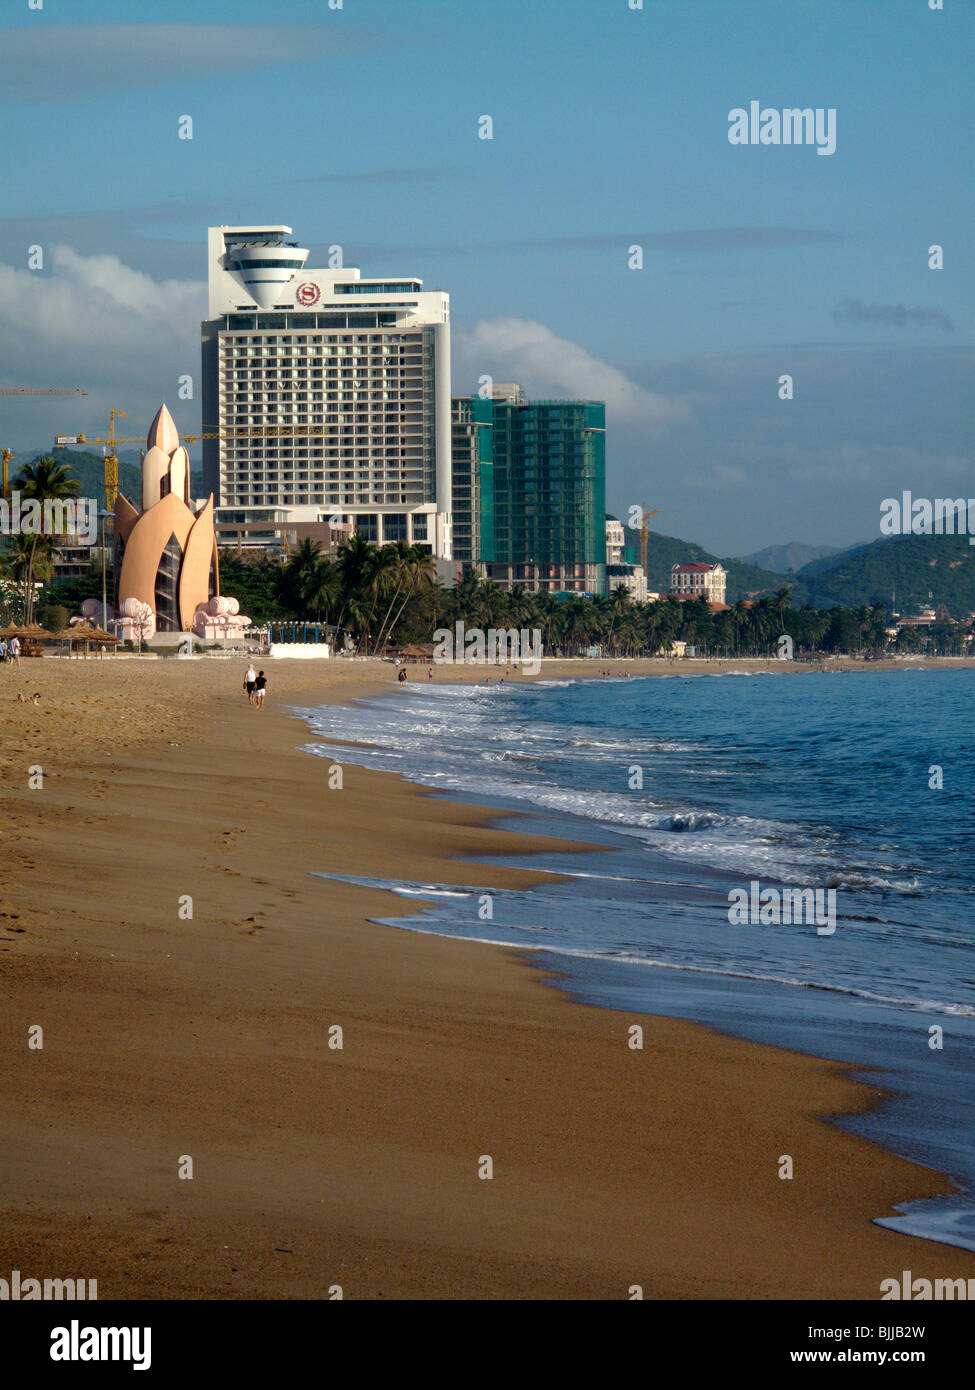 La plage de Nha Trang dans le sud Vietnam central Banque D'Images